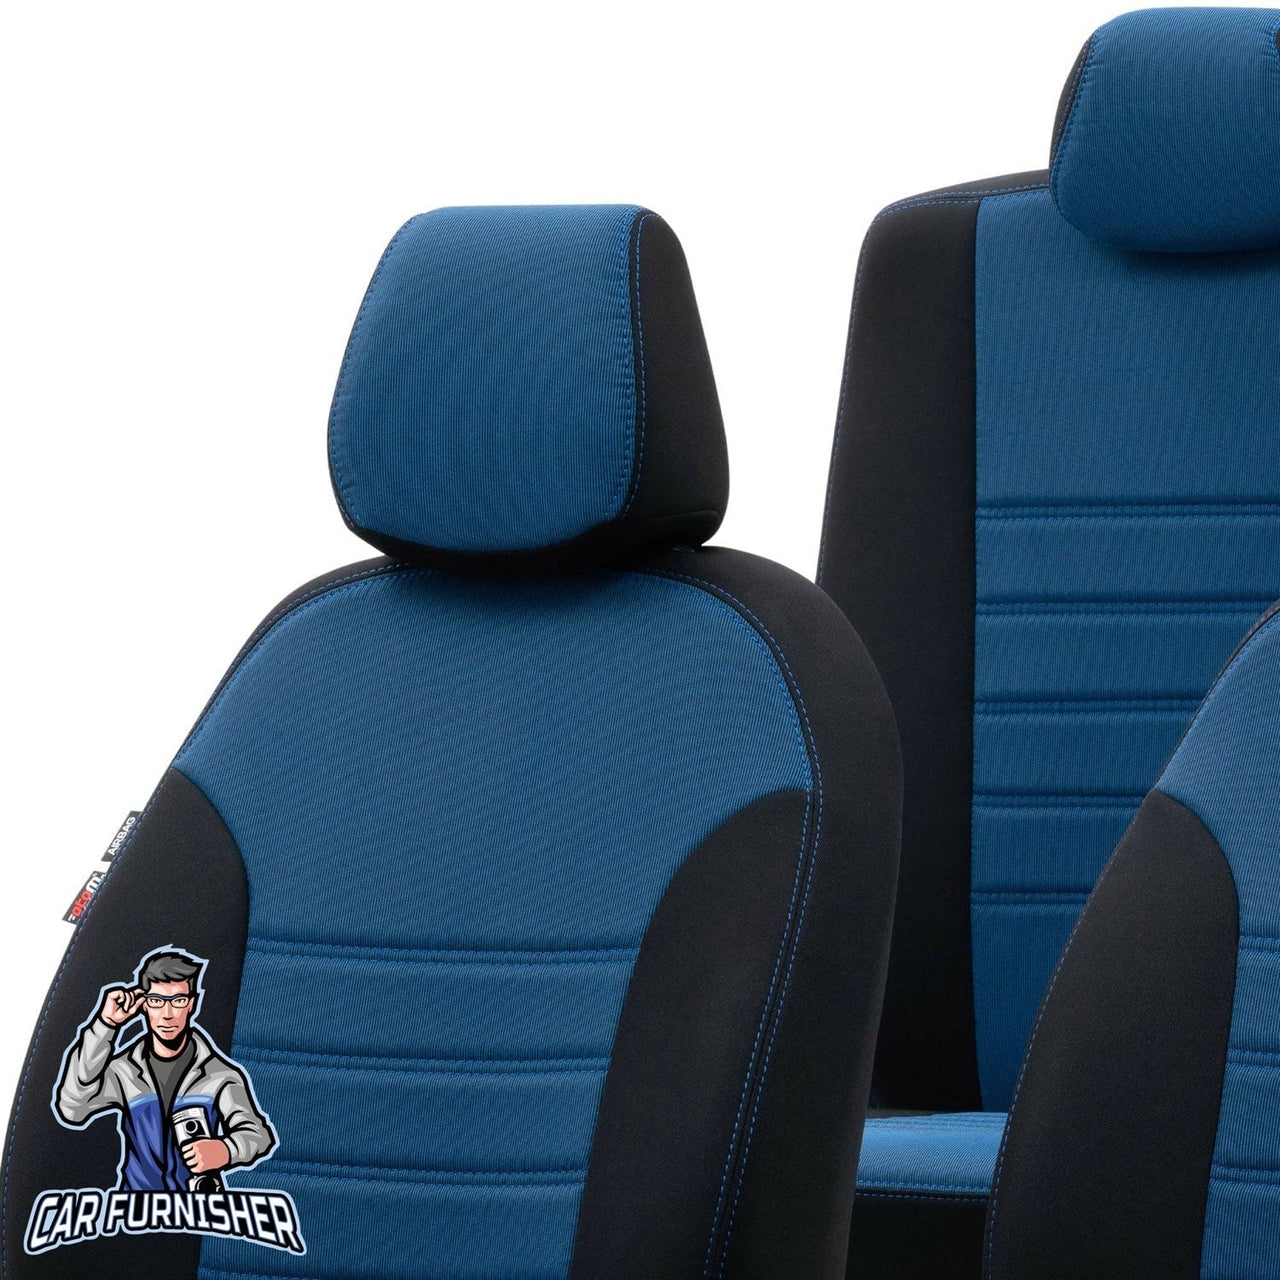 Bmw X3 Seat Cover Original Jacquard Design Blue Jacquard Fabric